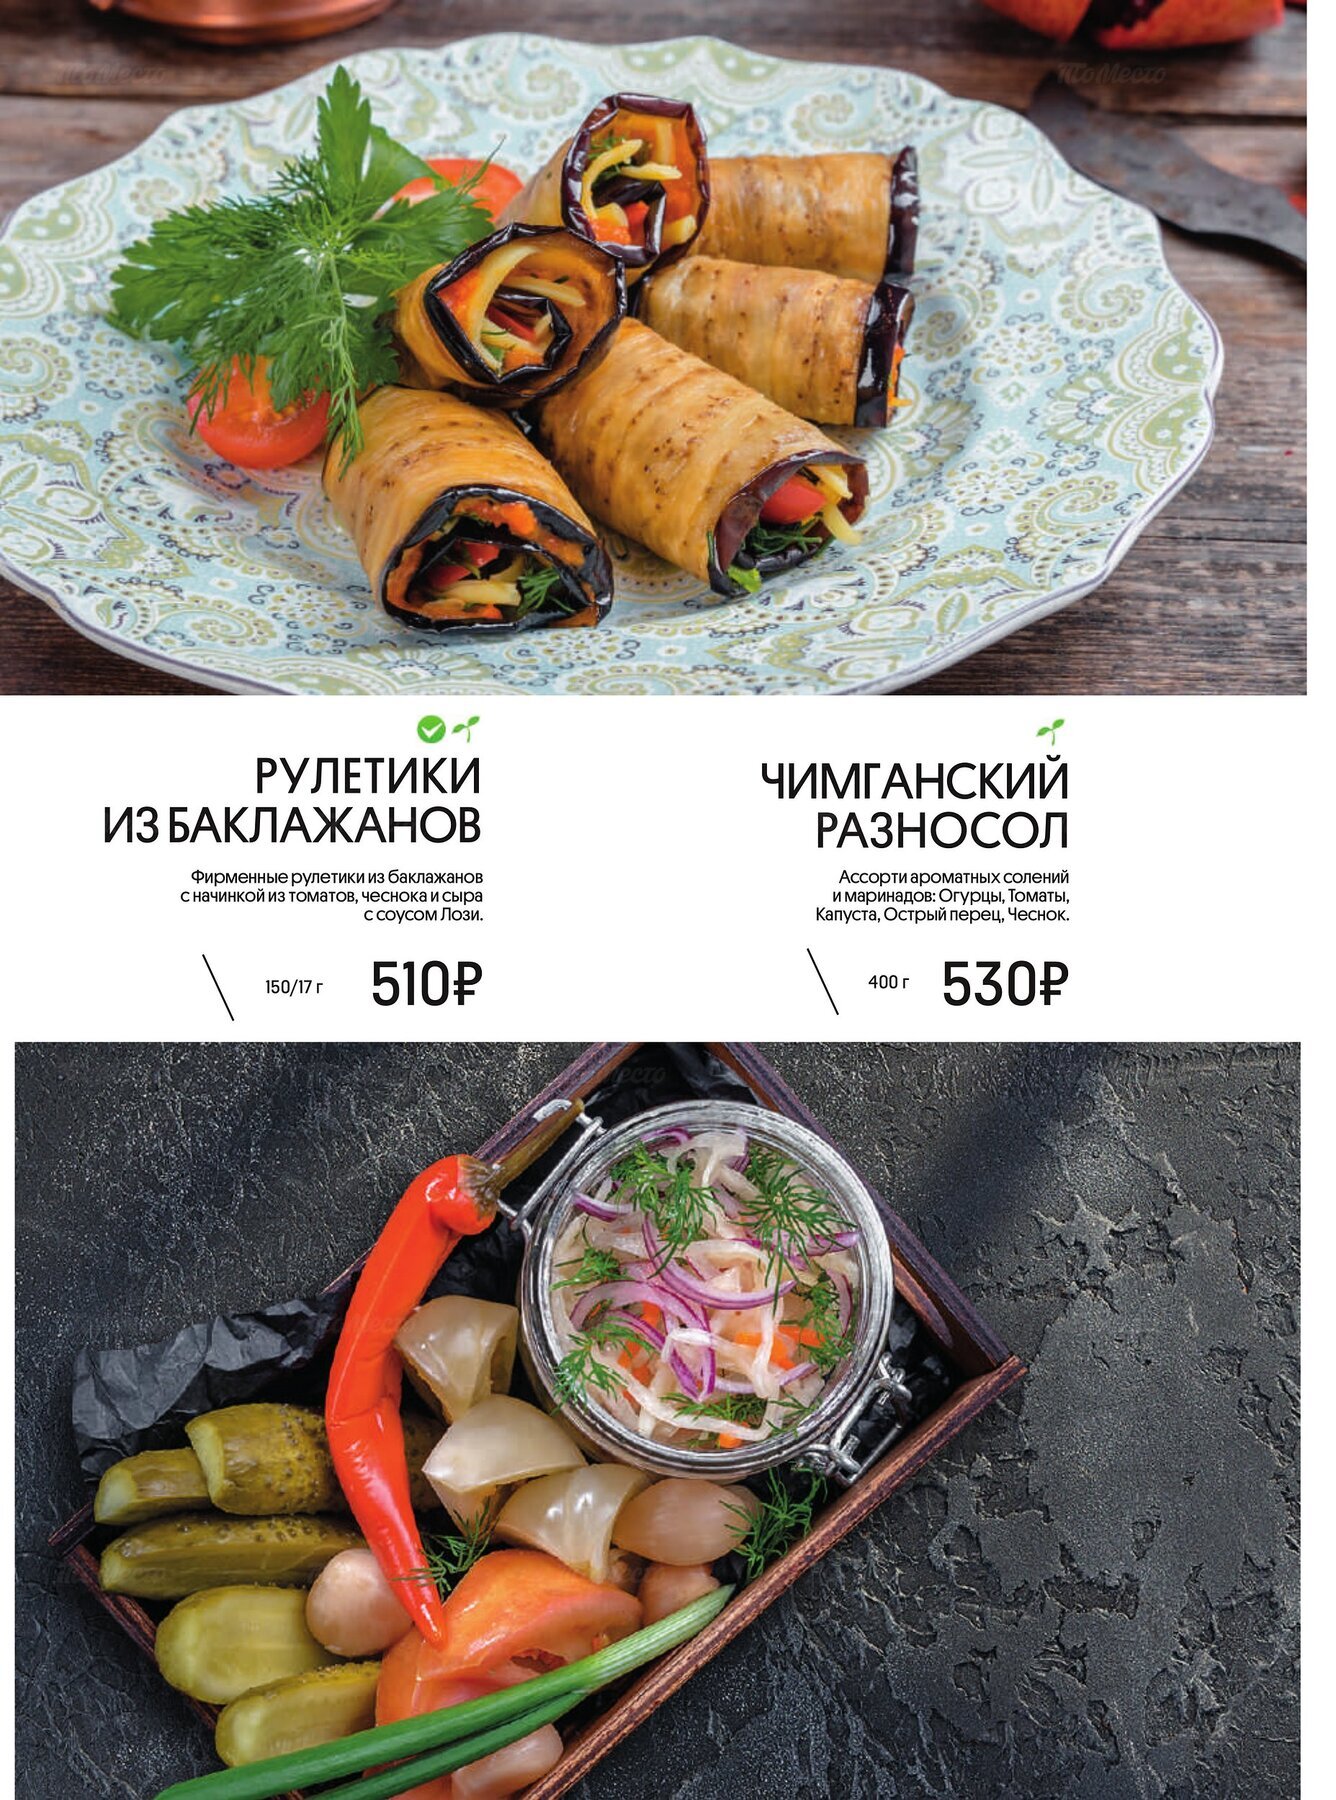 Меню и цены ресторана Урюк в Староватутинском проезде фото 9